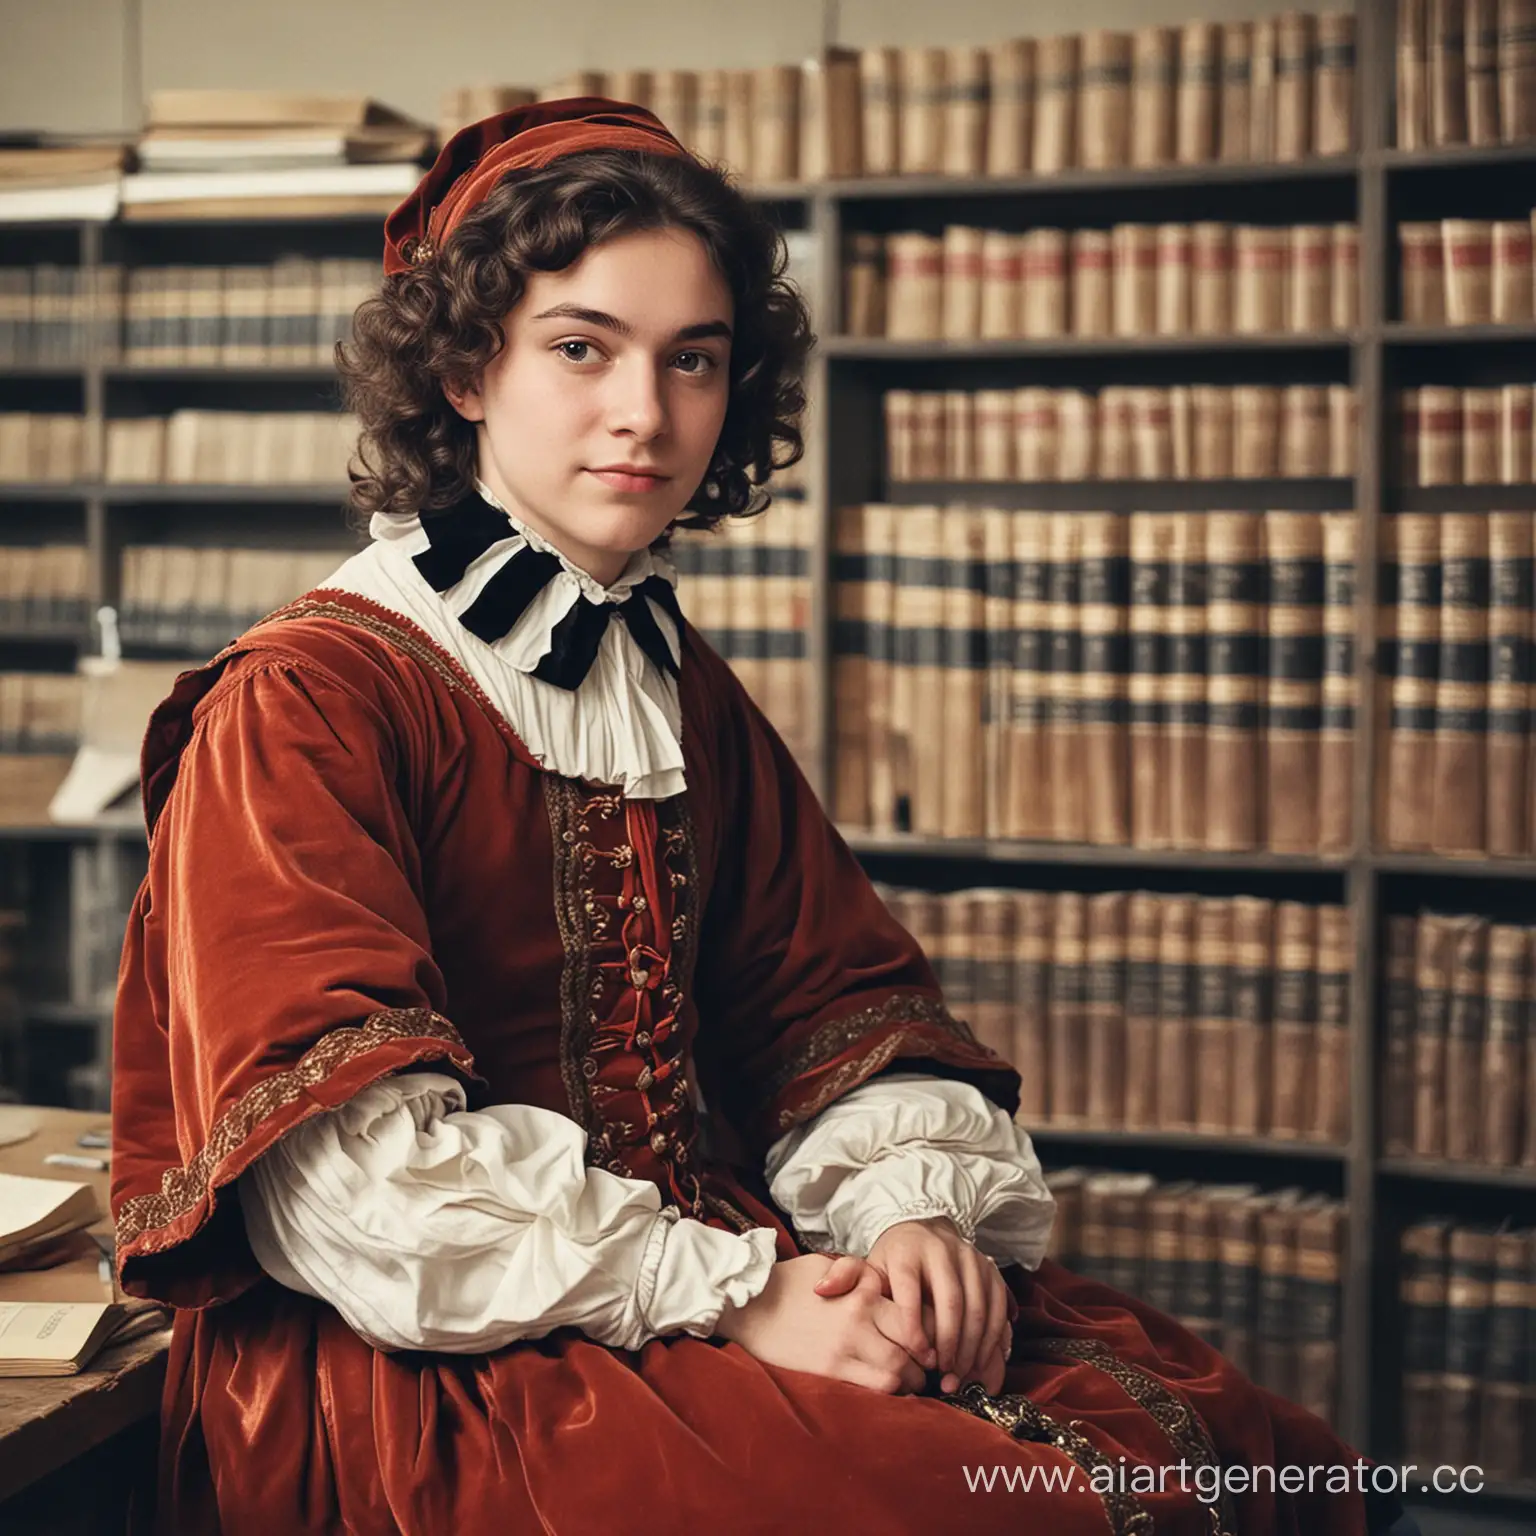 Студент историко-географического факультета сидит в архиве в европейском костюме 17 века